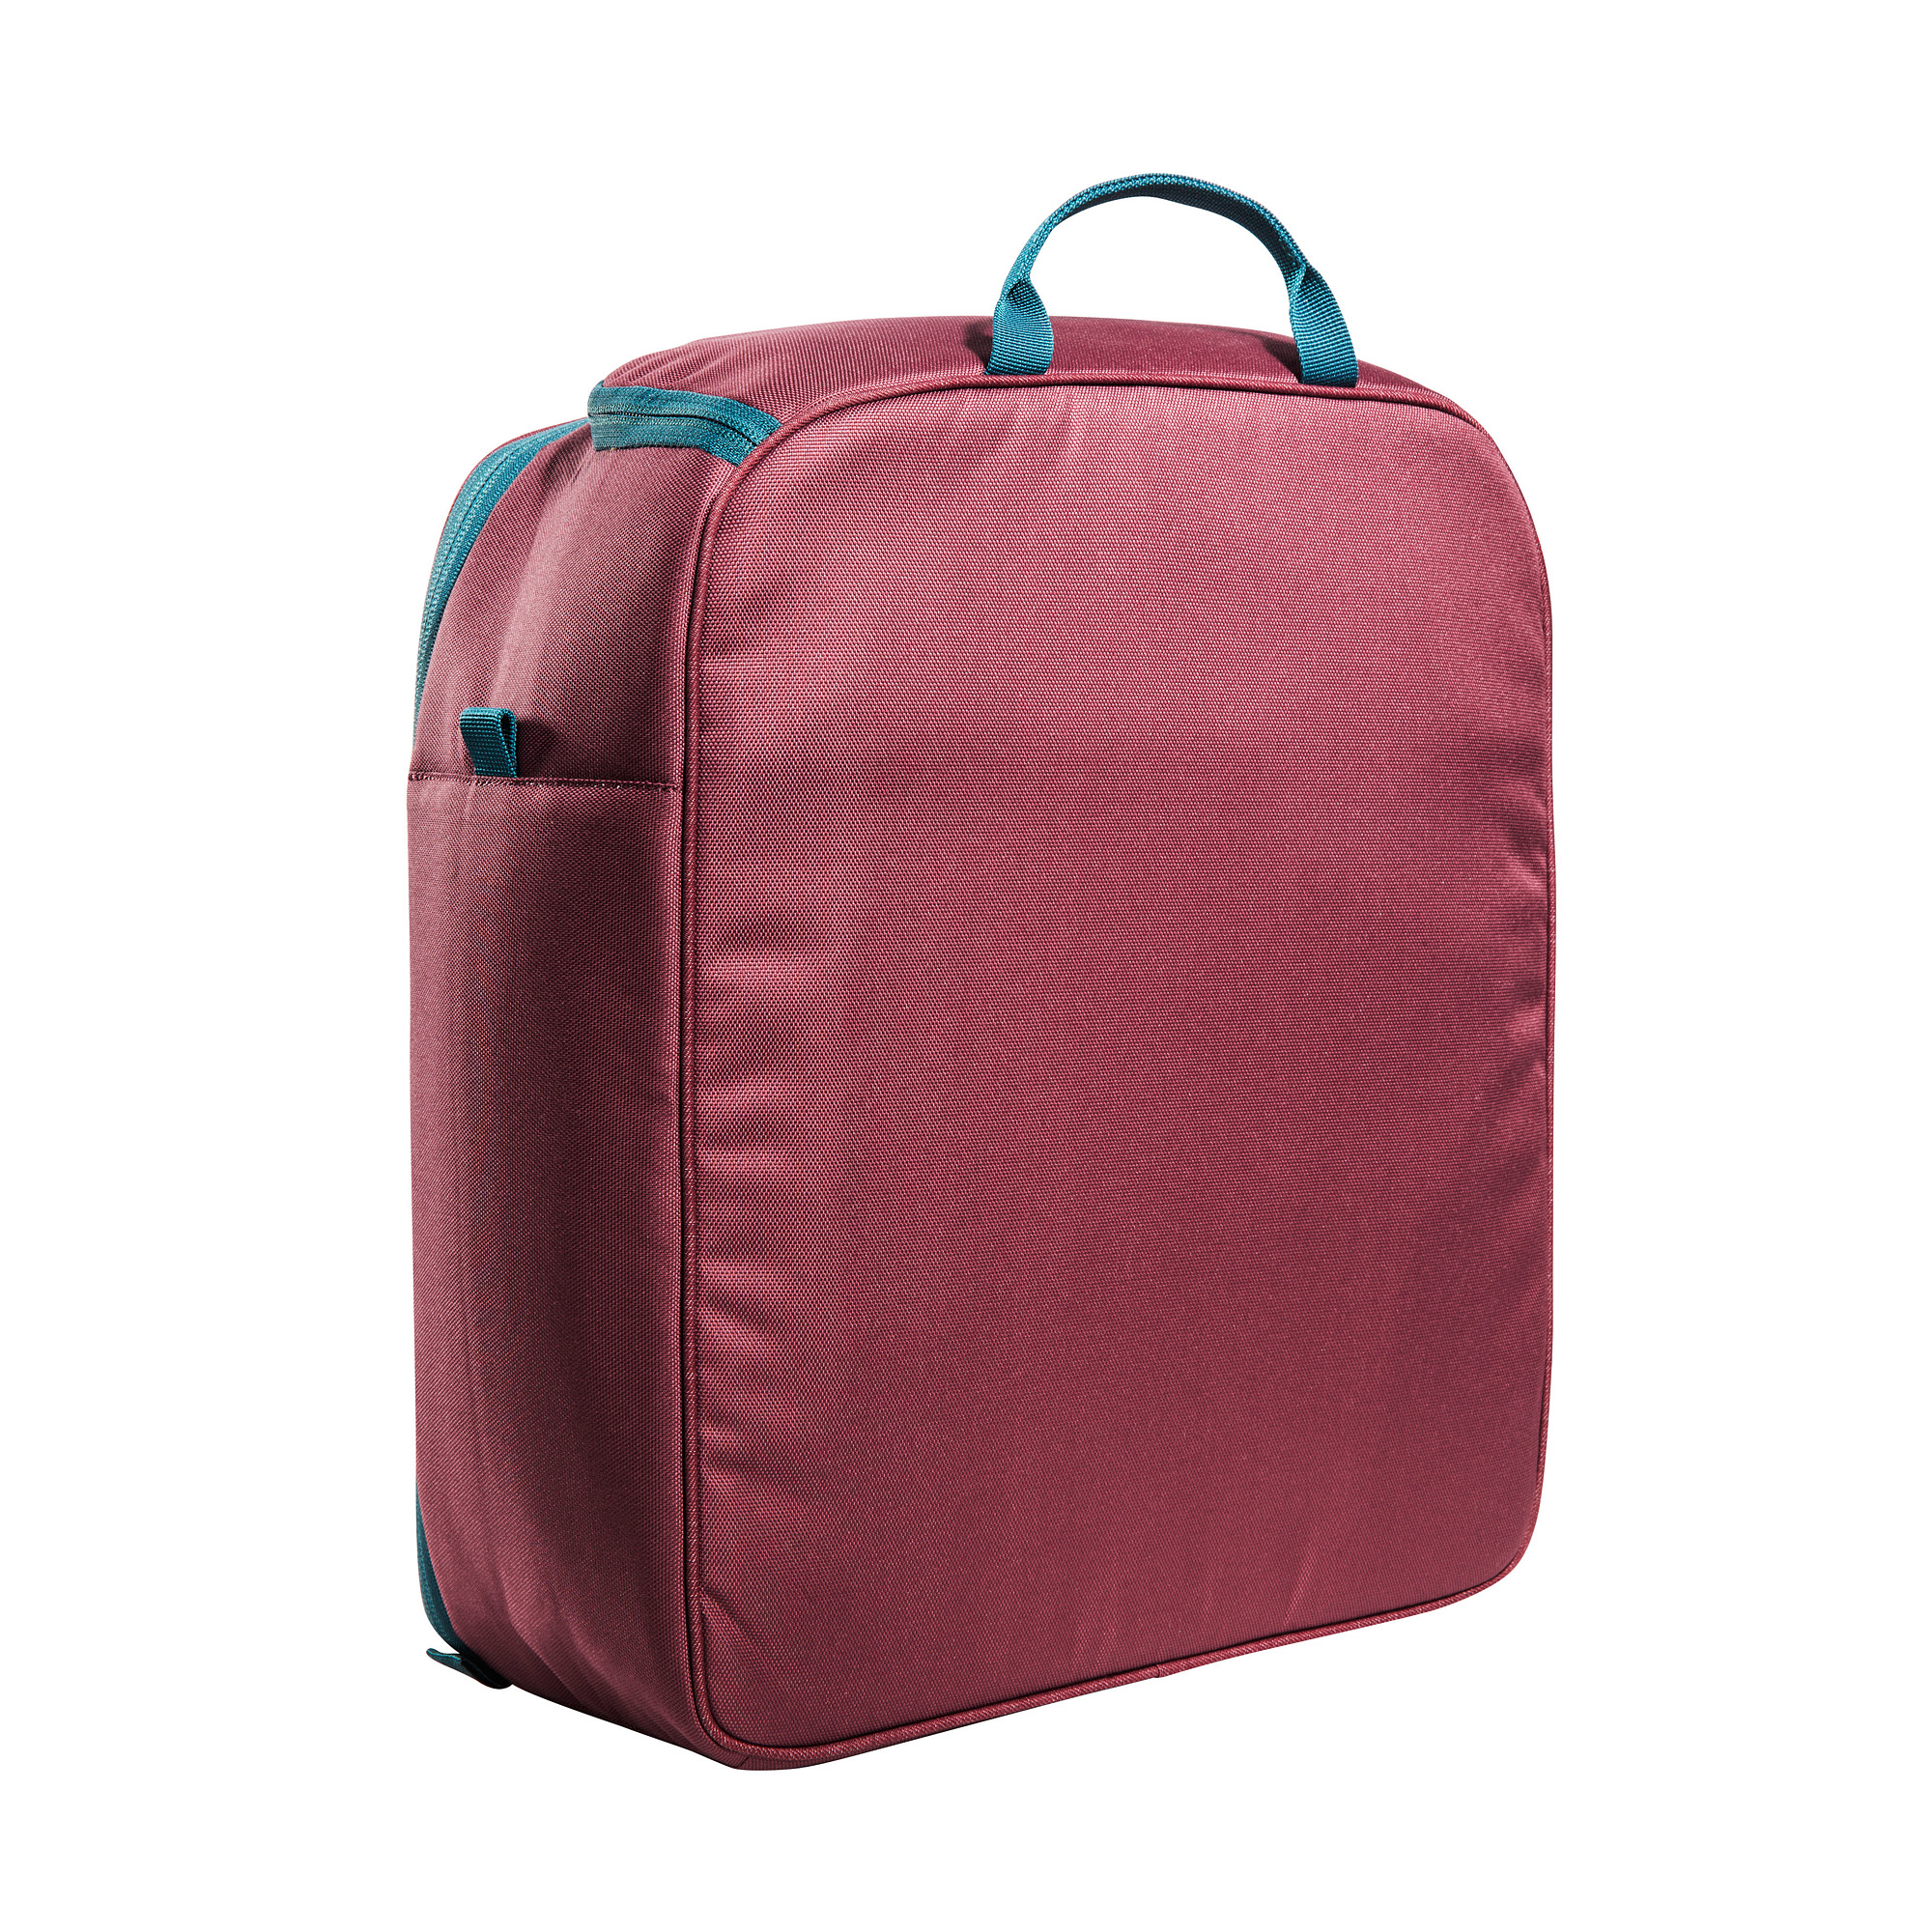 Gepäck, Tasche, Zubehör, Handtasche, Tatonka Cooler Bag M bordeaux red rot Sonstige Taschen 4013236336320